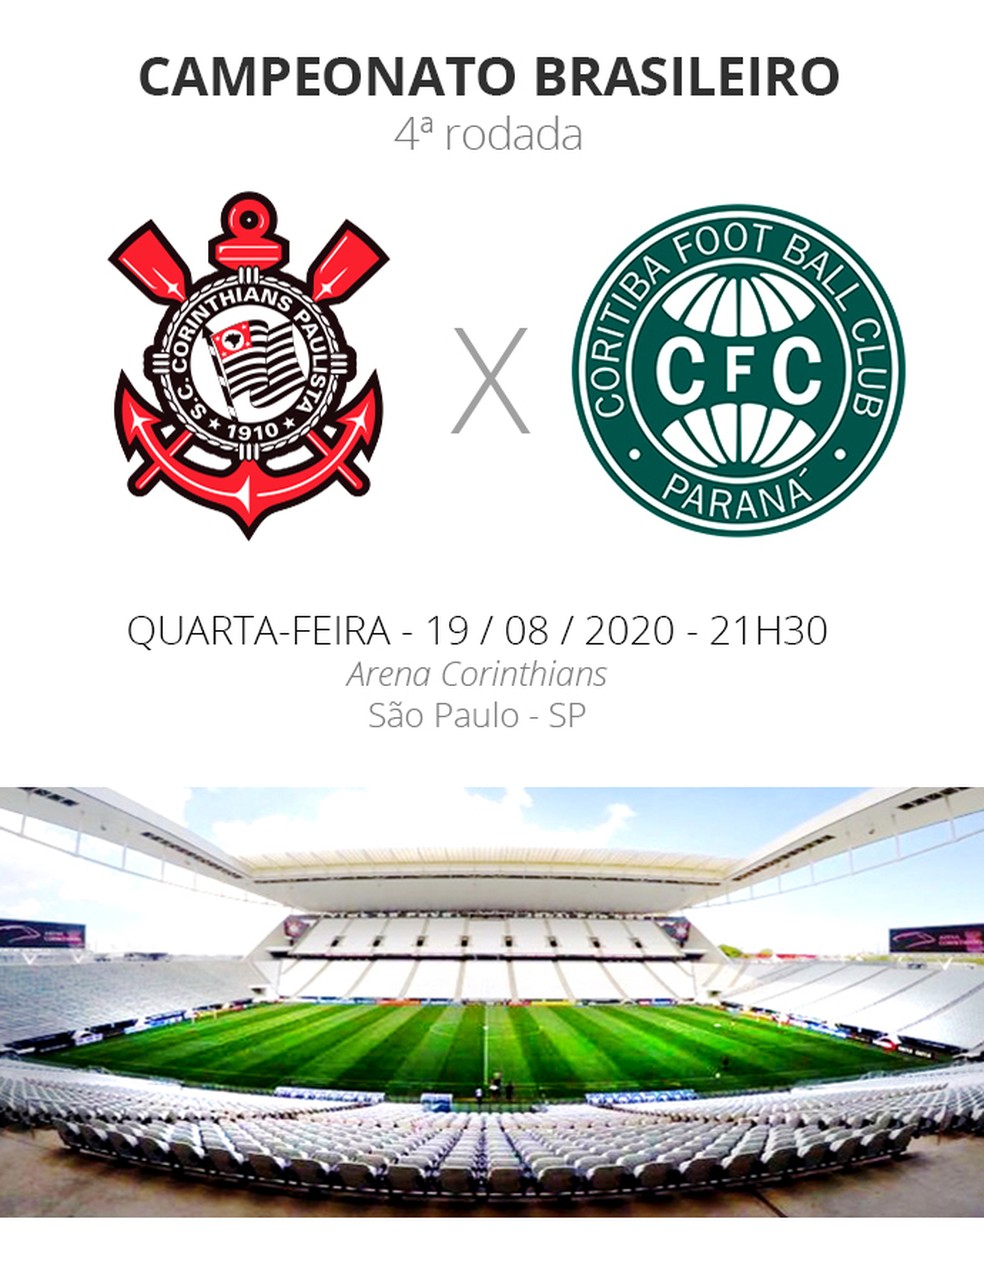 Veja todos os jogos do Corinthians no Campeonato Brasileiro de 2020